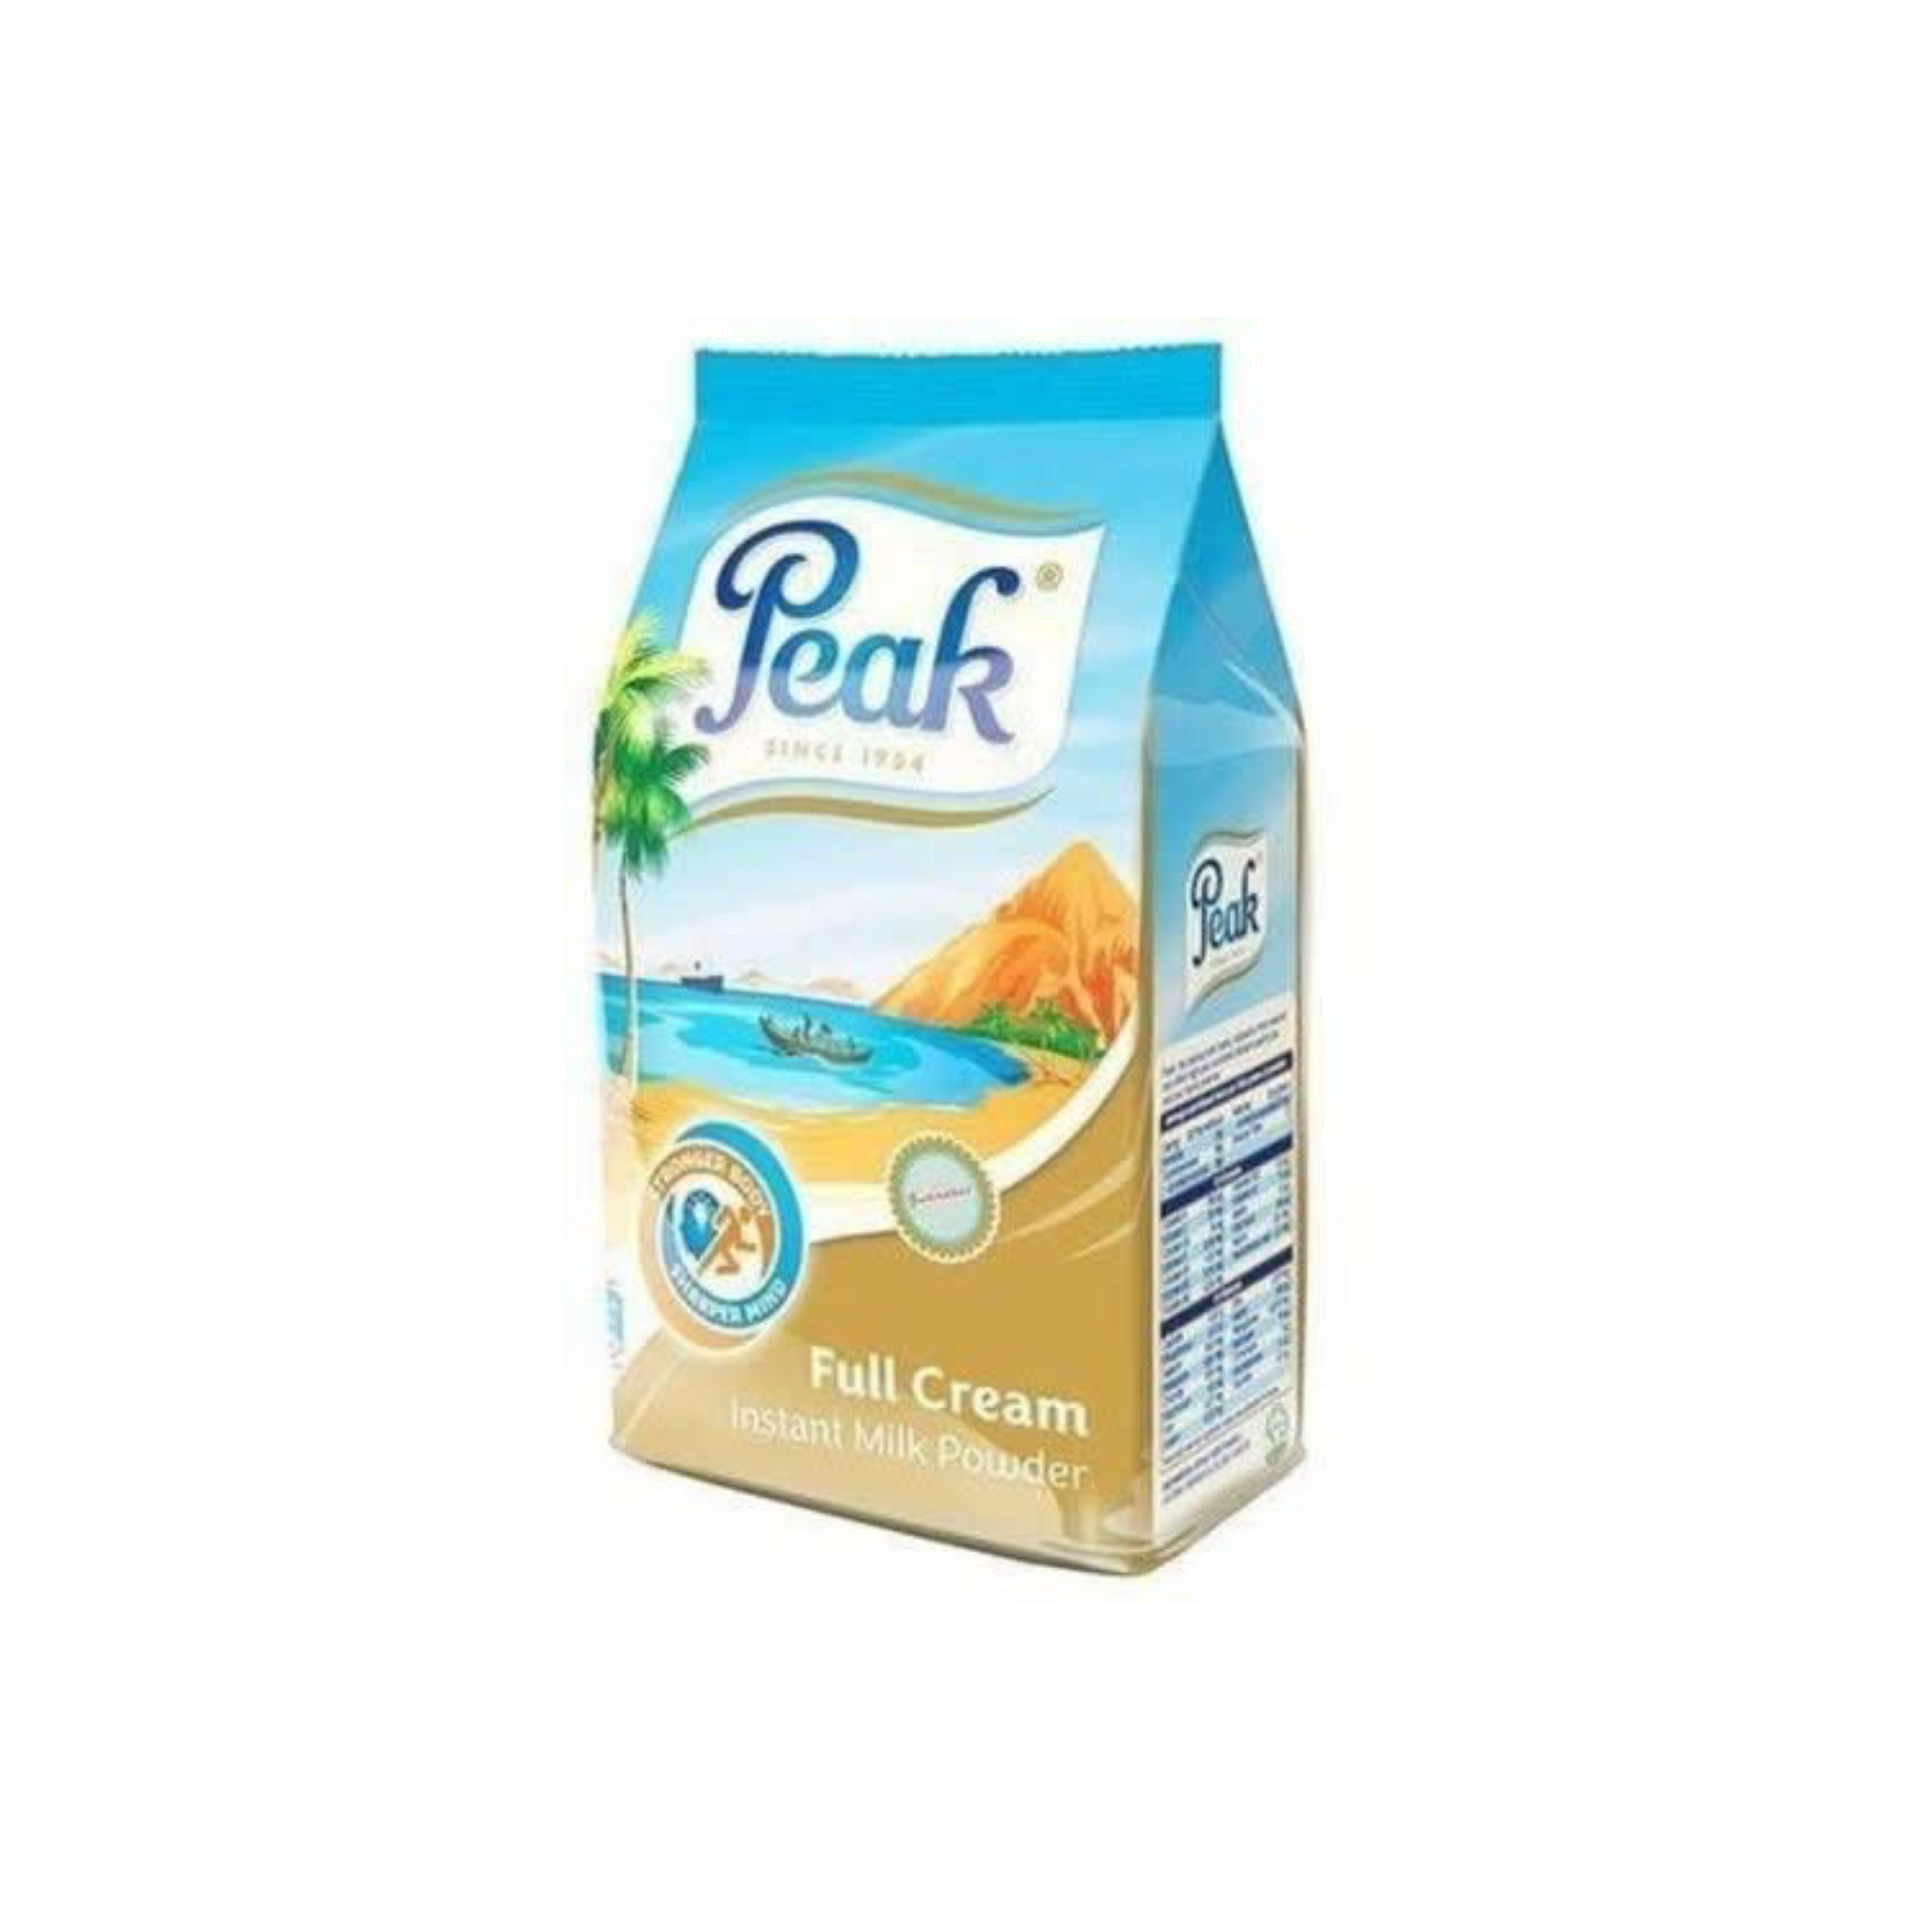 Peak Full Cream Instant Milk Powder-360g refill